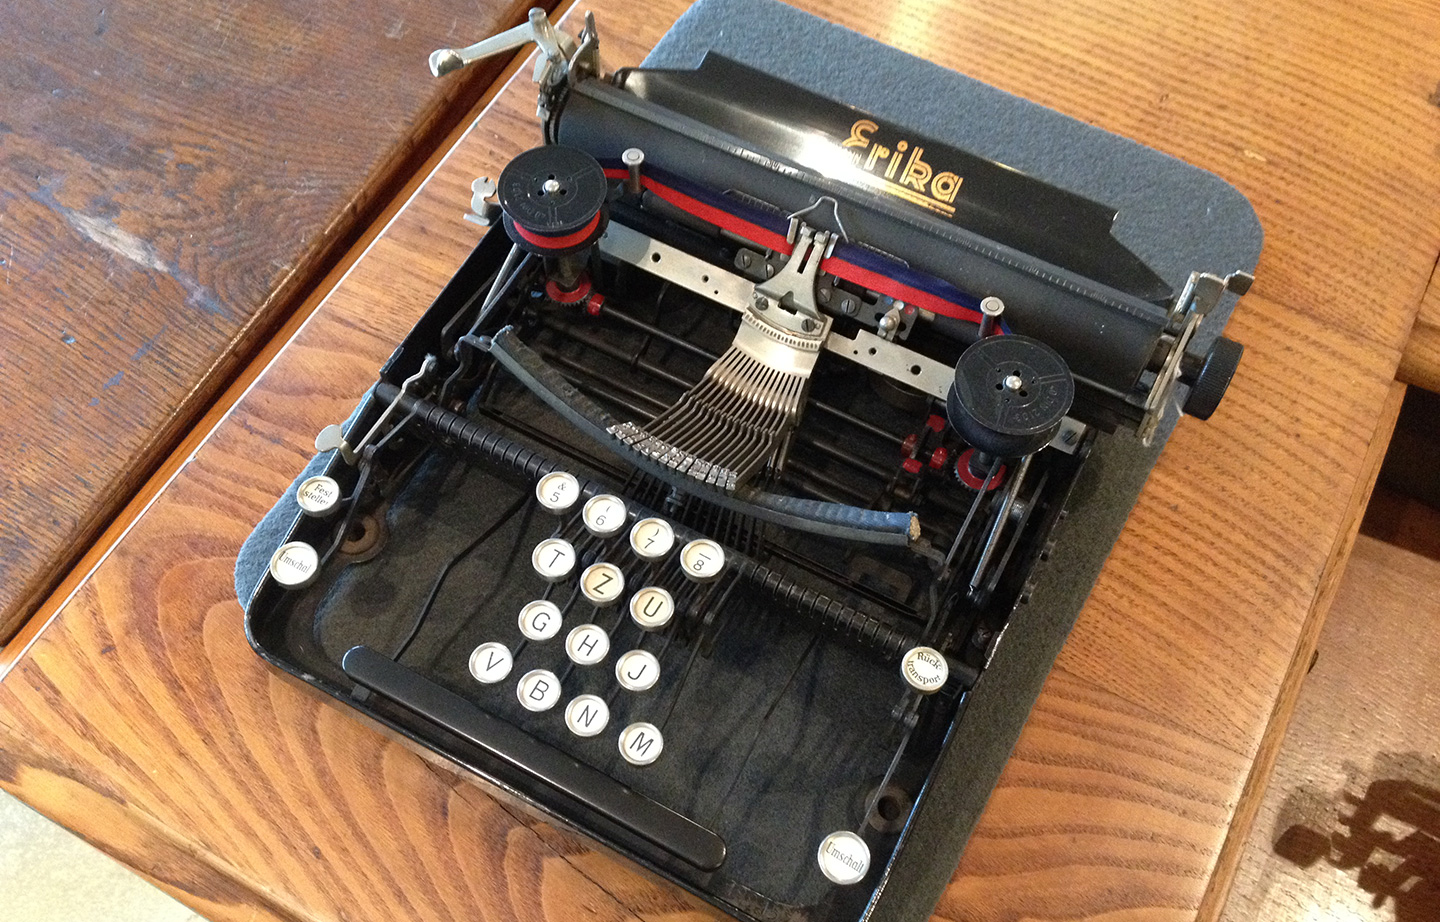 Picture of a Erika testing typewriter